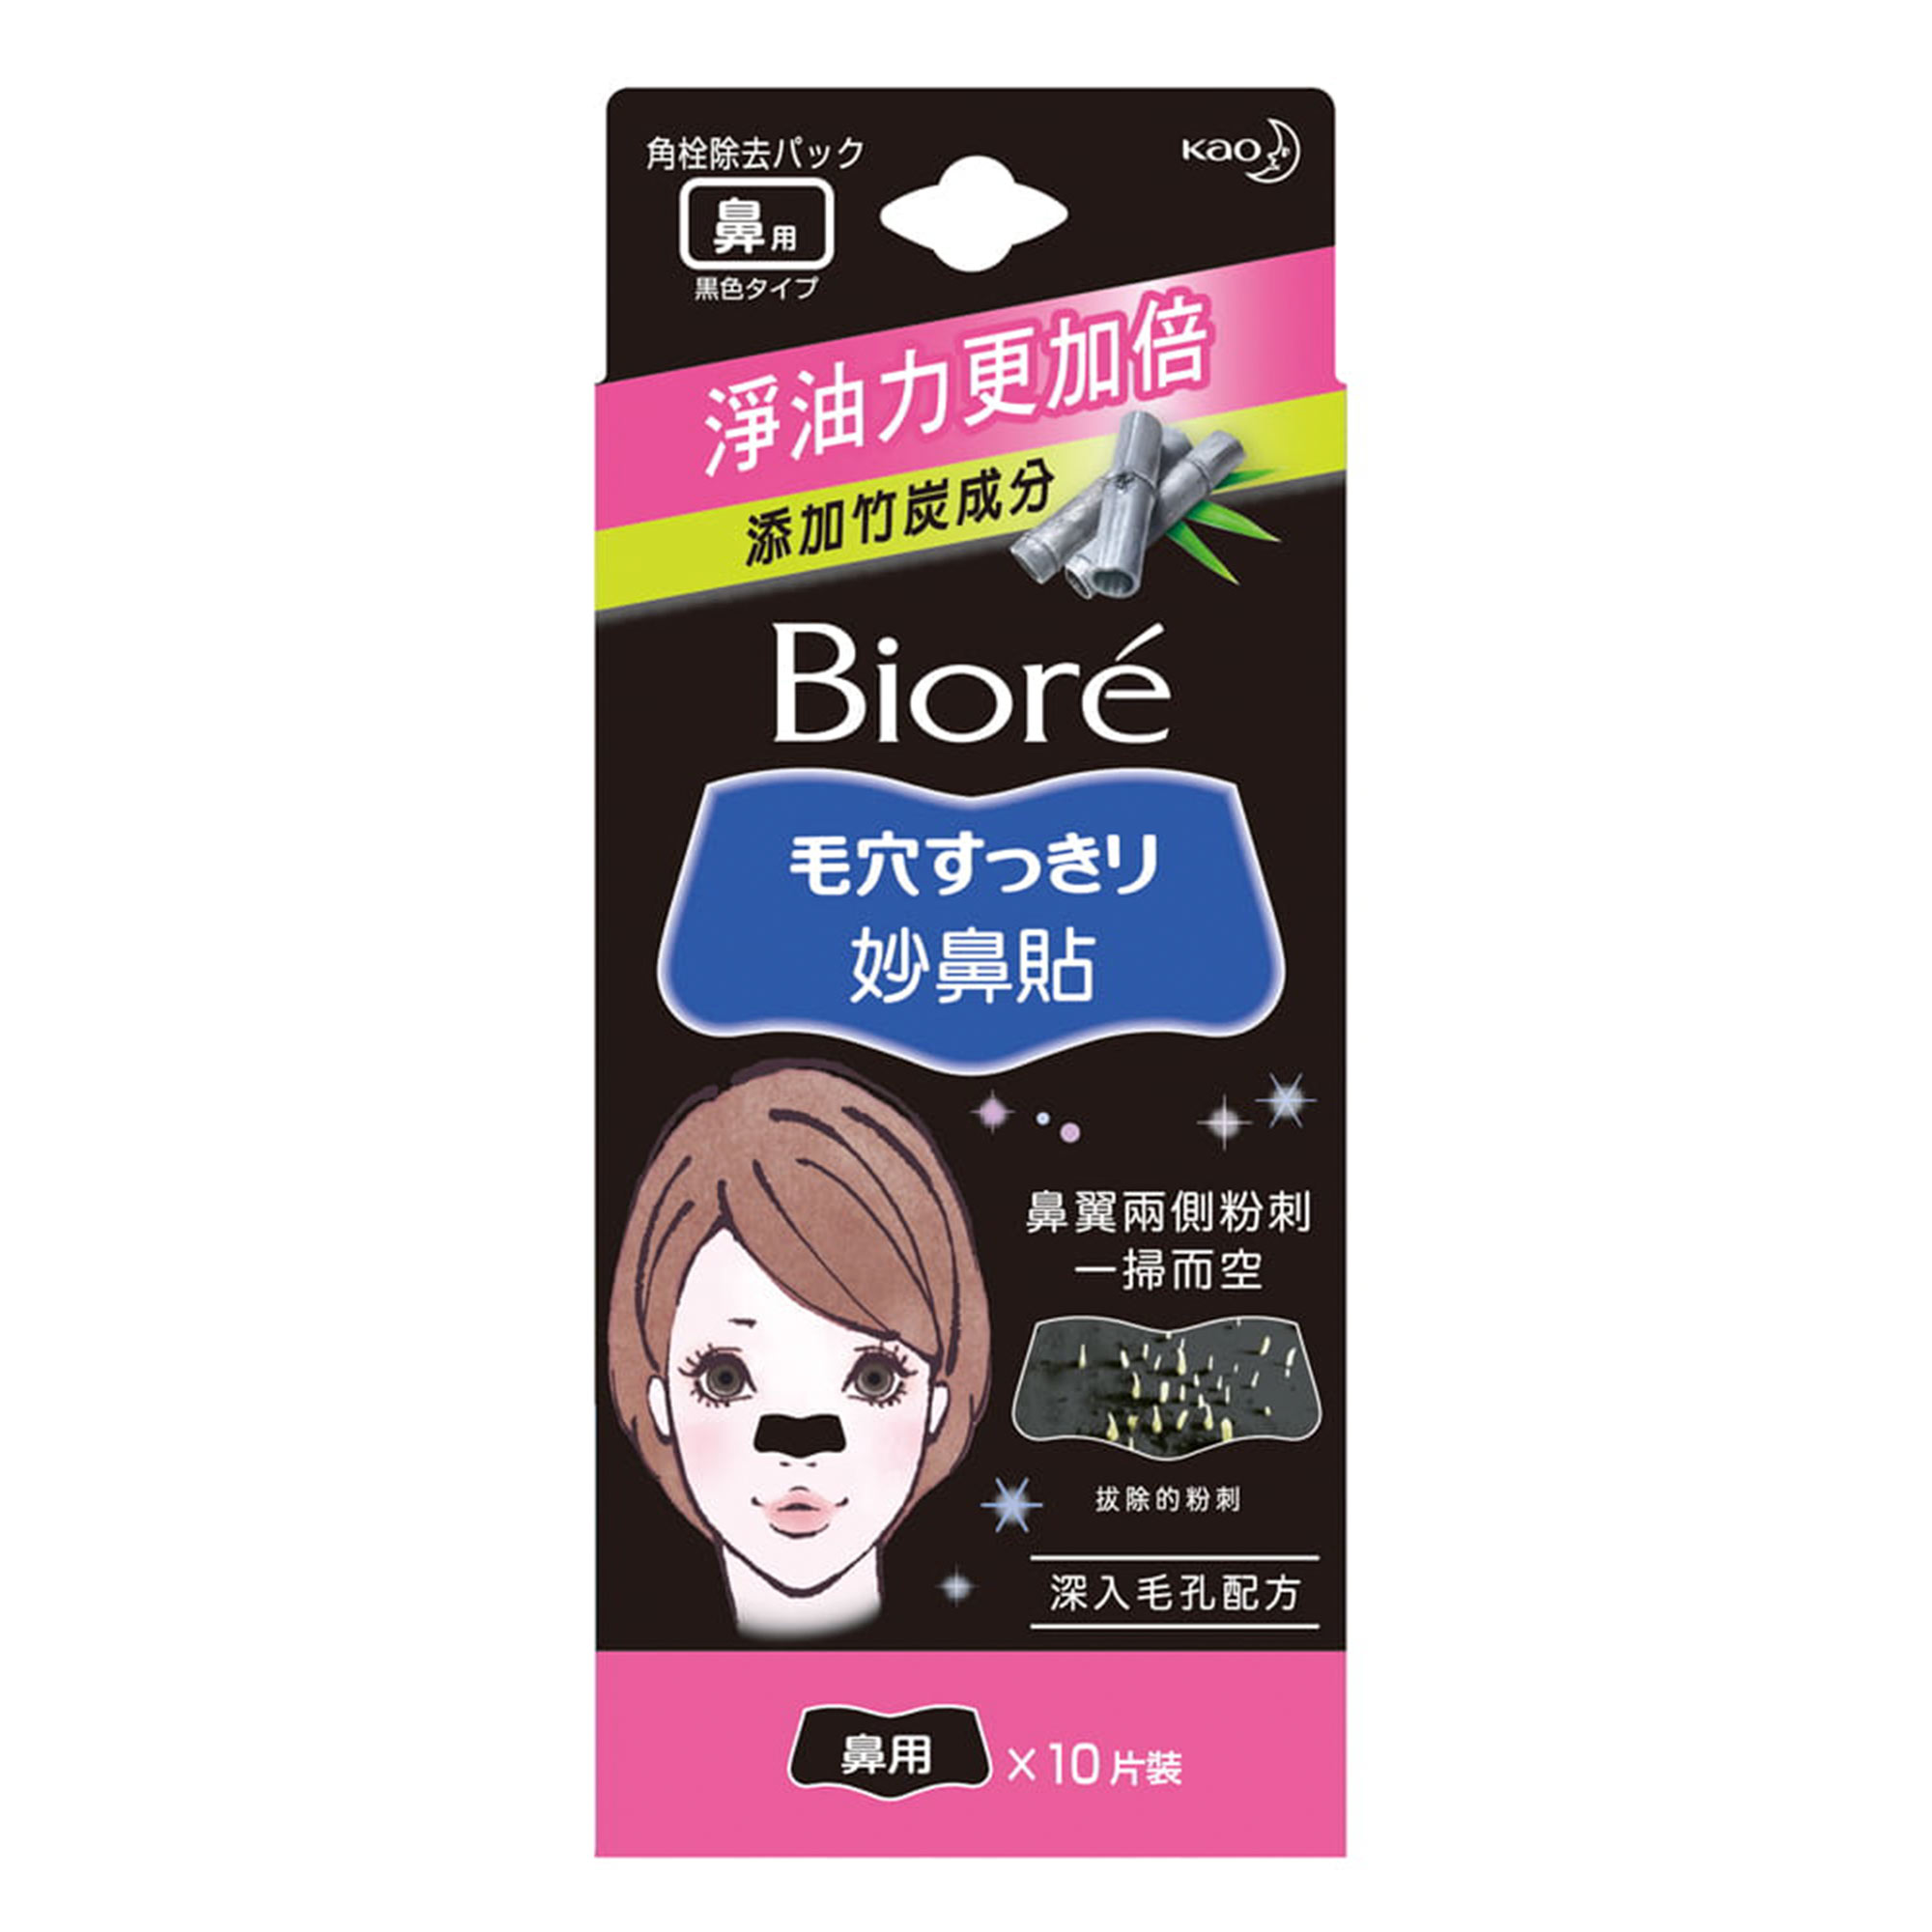 Очищающие полоски для носа Biore  с бамбуковым углем 10 шт